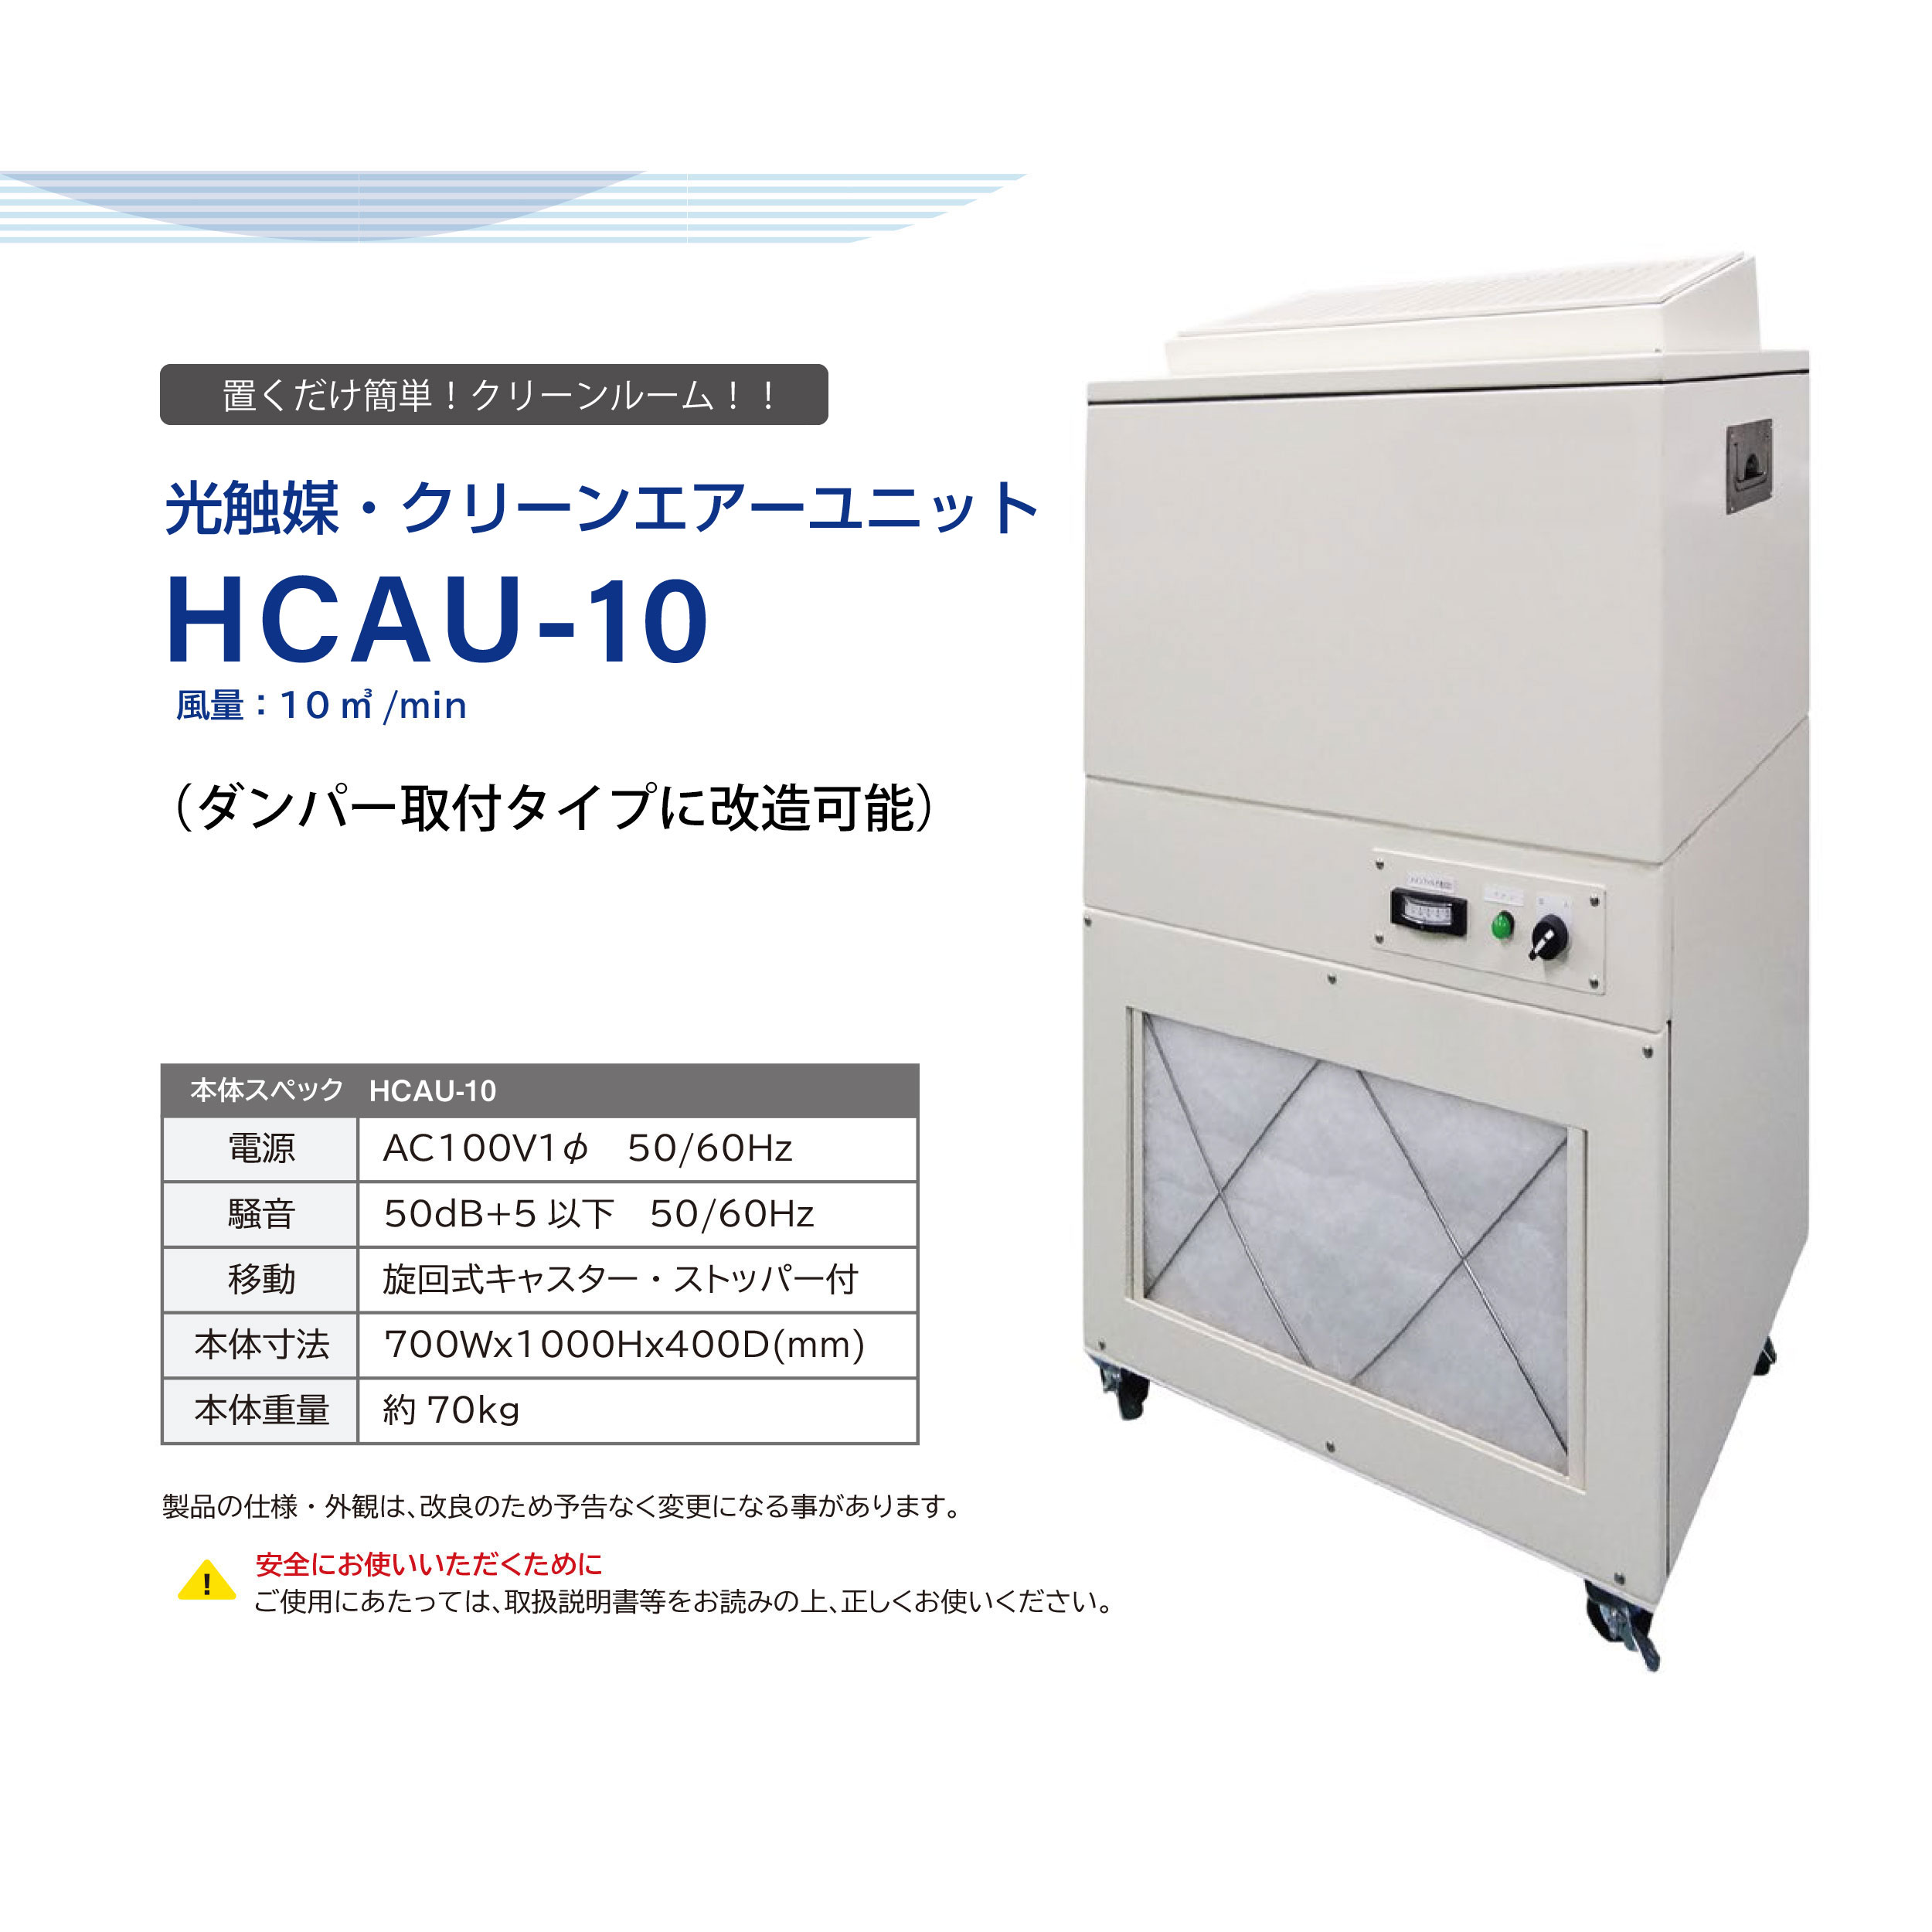 HCAU-10